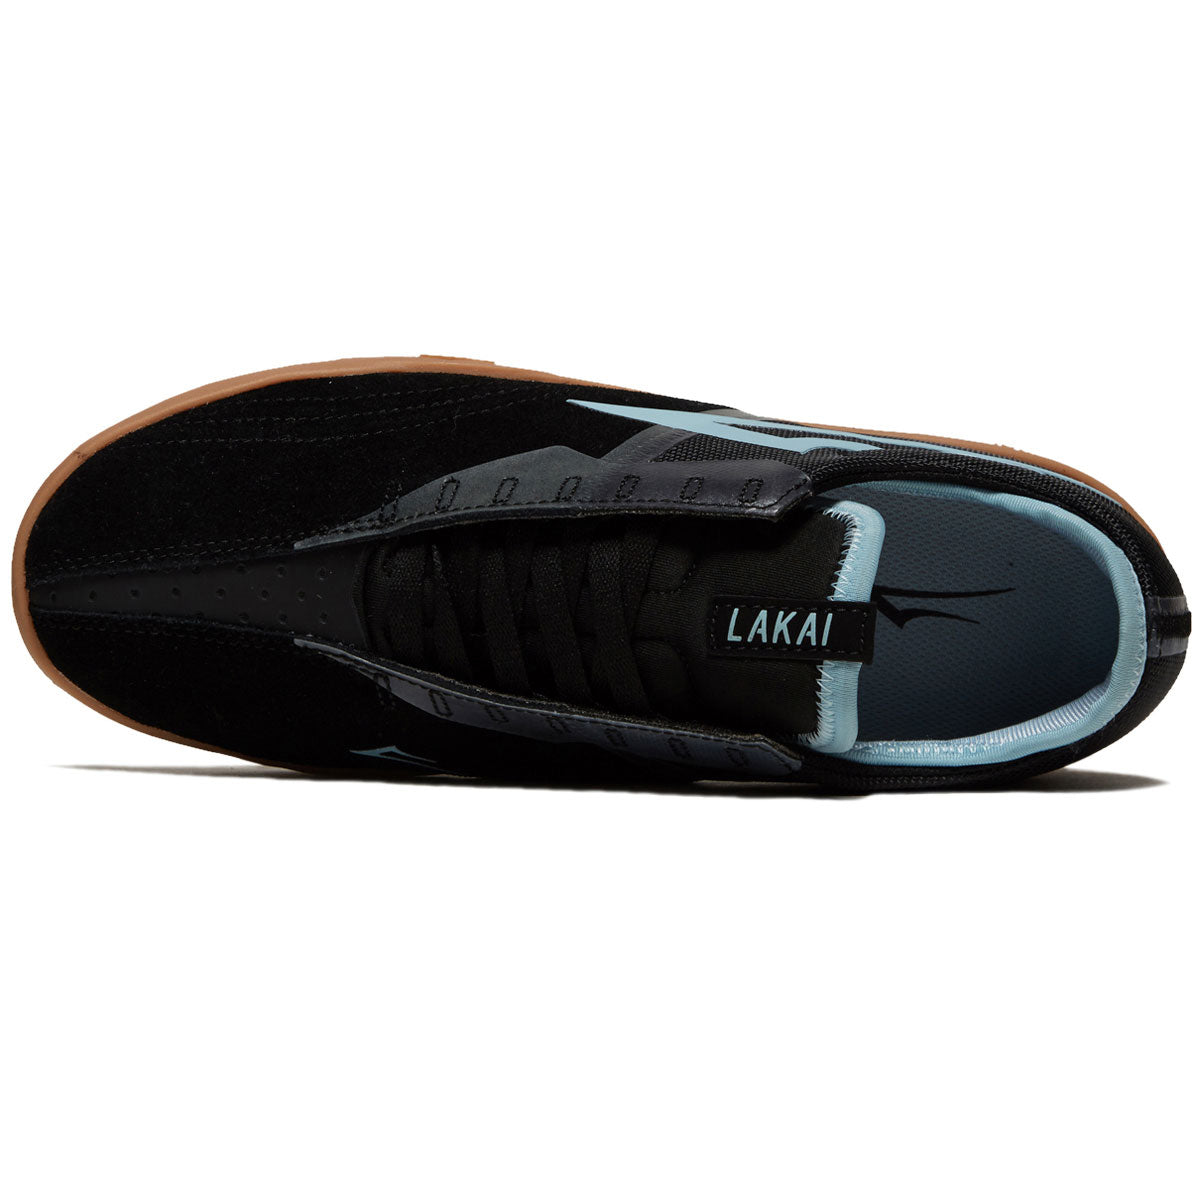 Lakai Mod Shoes - Black/Gum Suede image 3